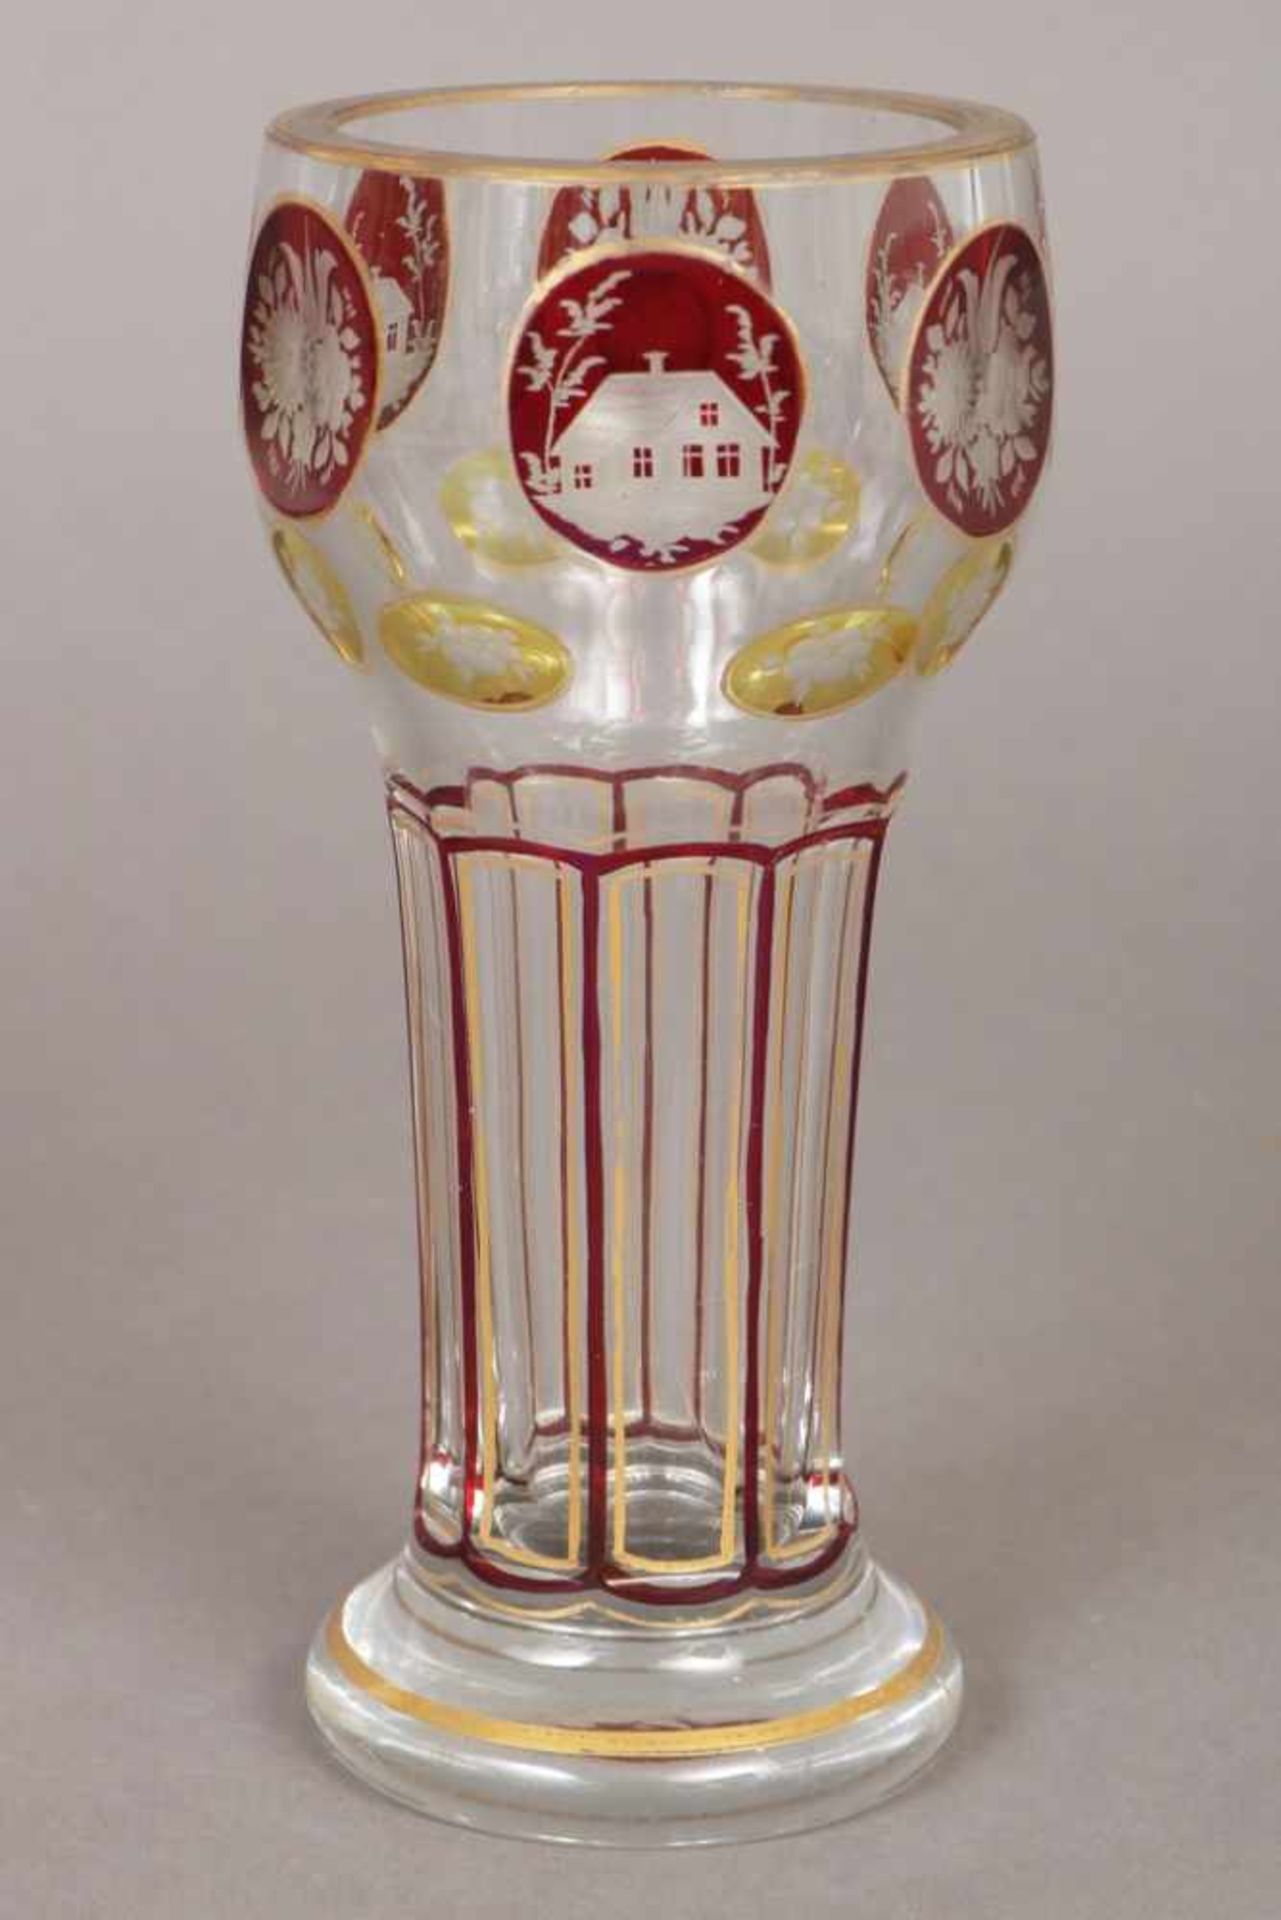 Böhmisches Pokalglas des 19. Jhdts. farbloses Kristall mit gelb-roten Reserven mit Floral- und